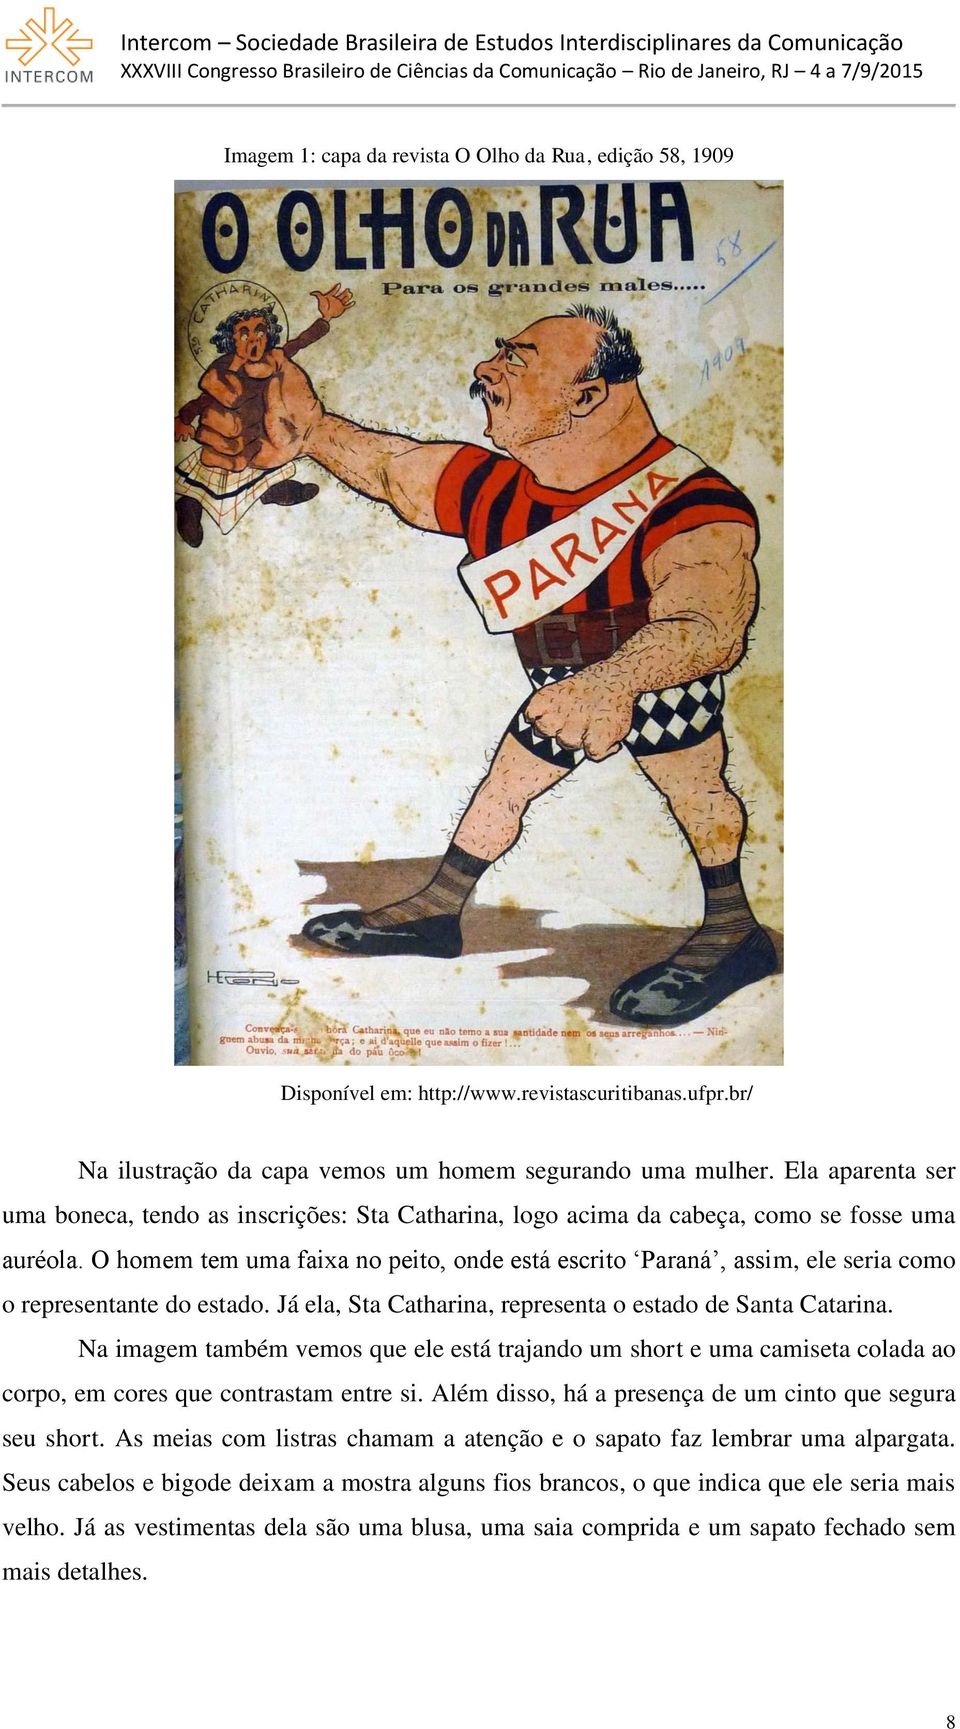 O homem tem uma faixa no peito, onde está escrito Paraná, assim, ele seria como o representante do estado. Já ela, Sta Catharina, representa o estado de Santa Catarina.